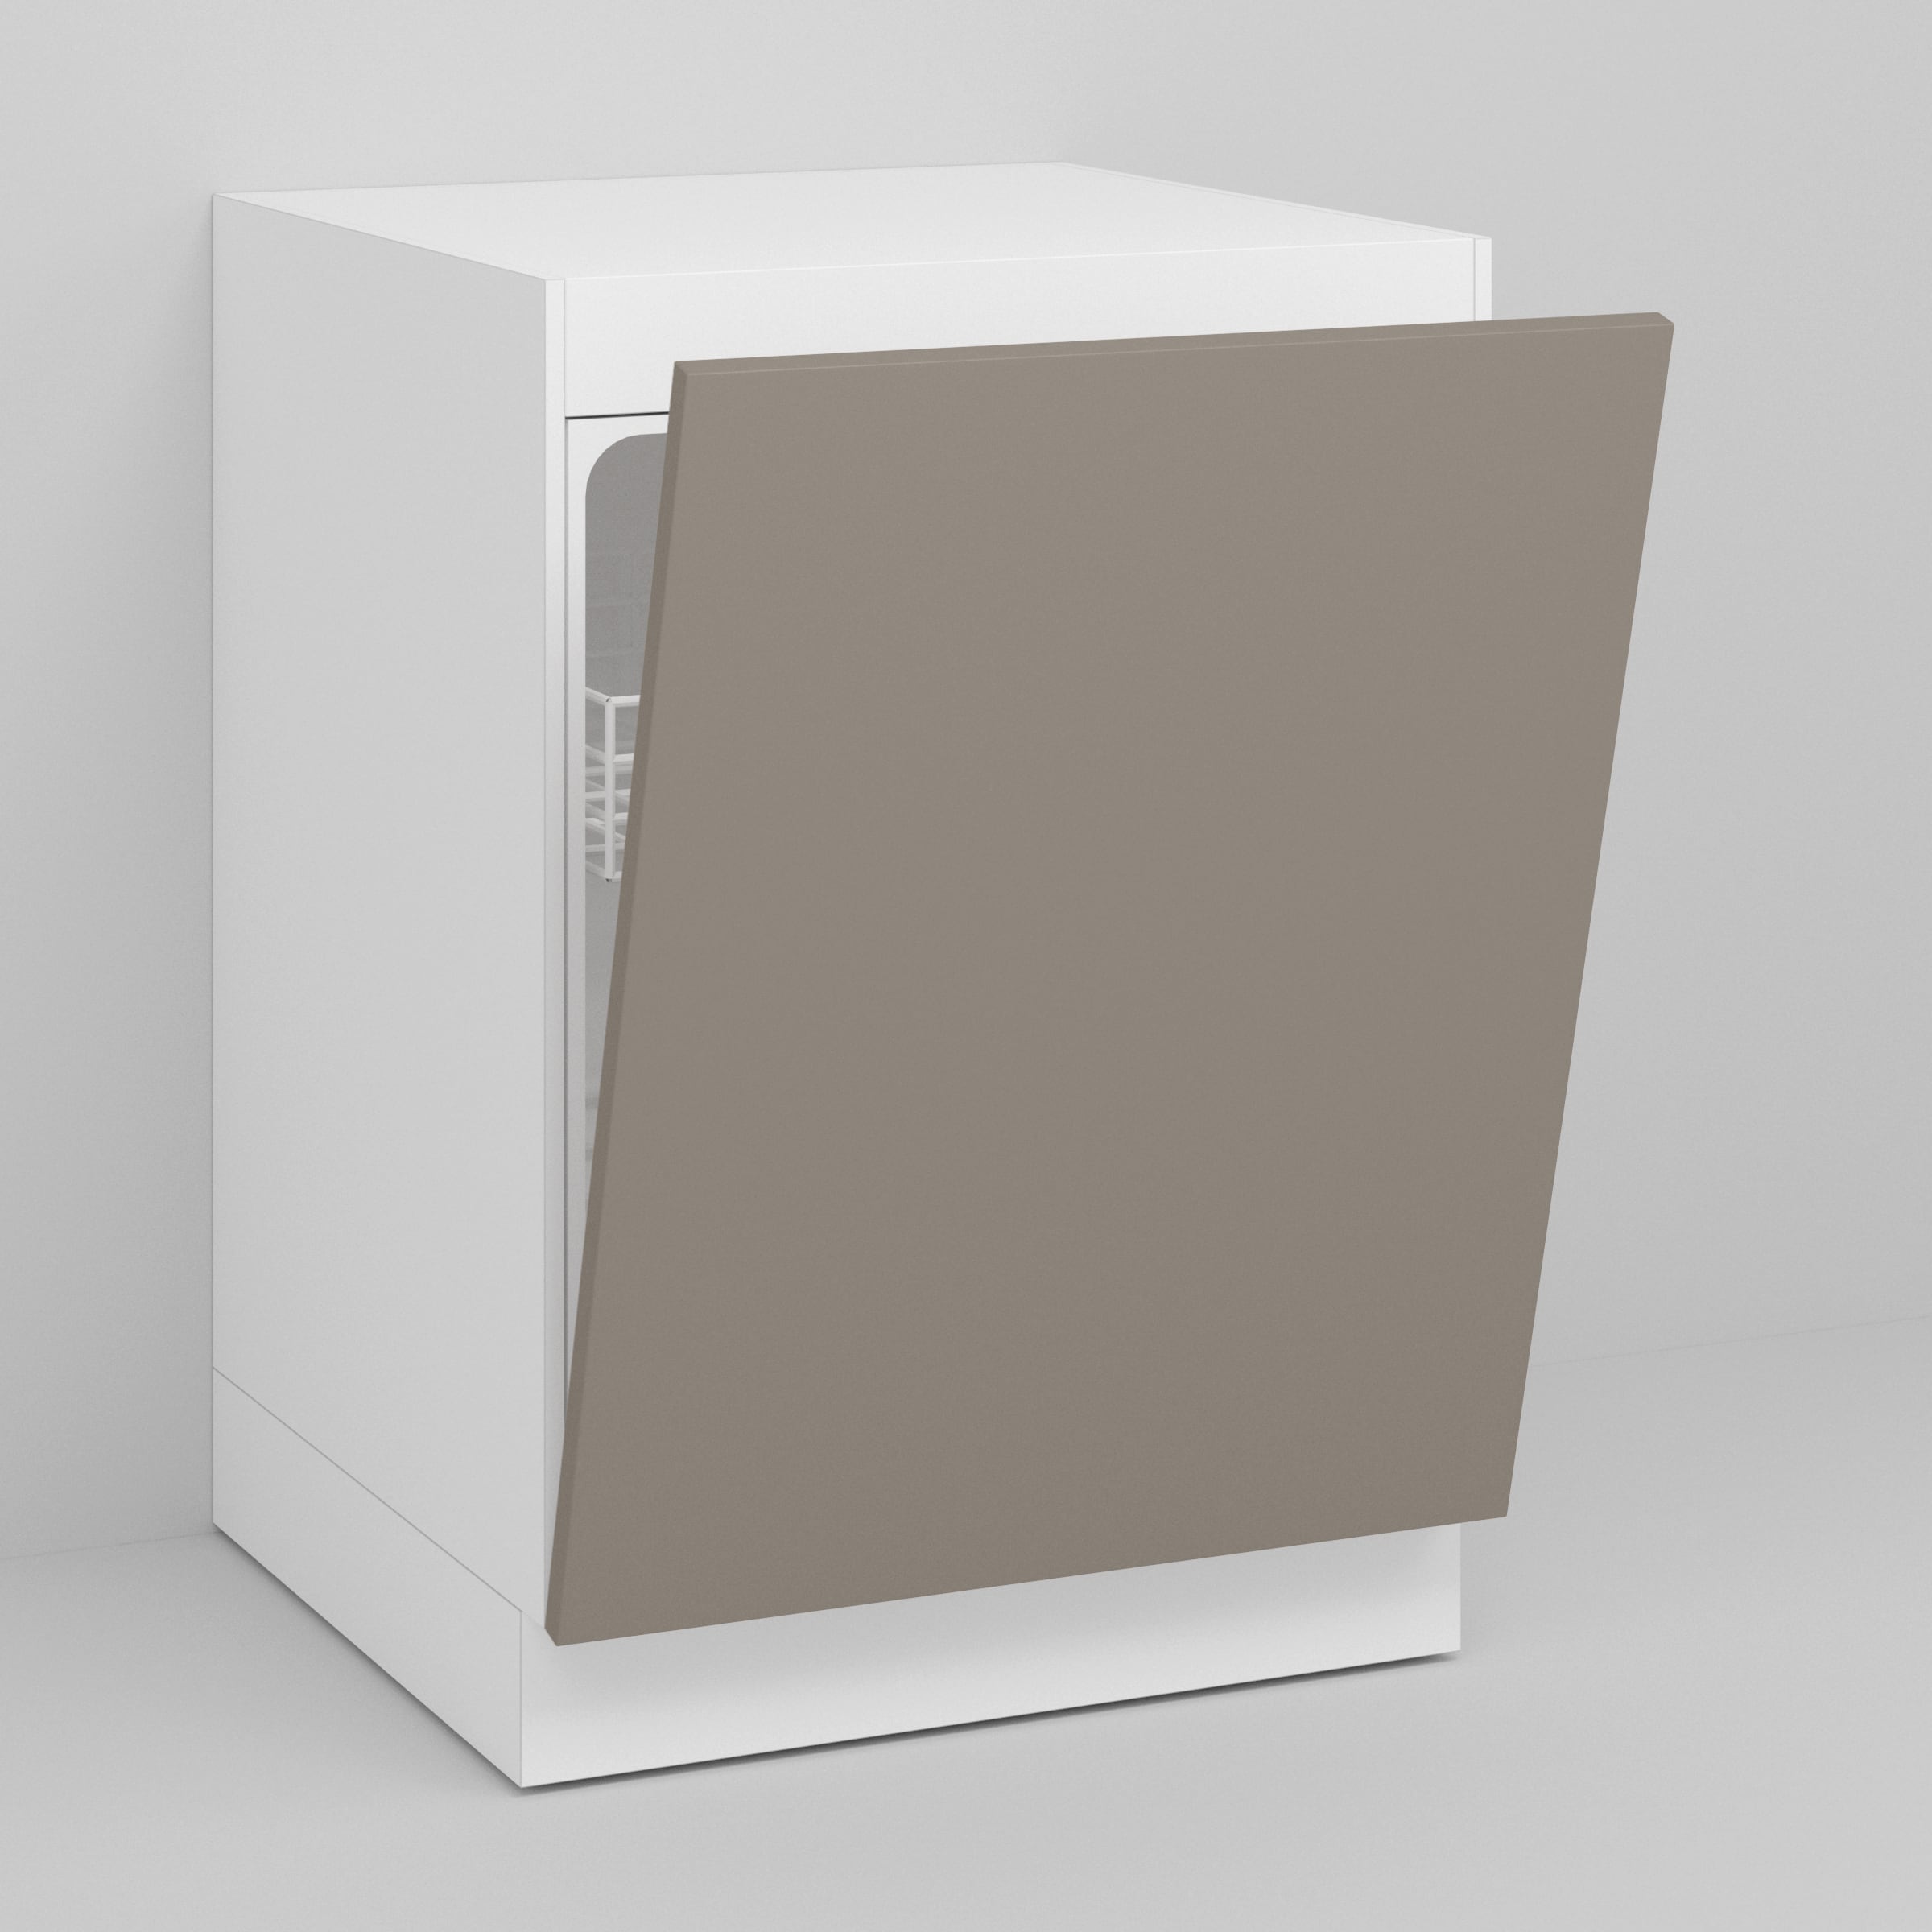 Desert Grey Supermatte Slab Door for Sektion 24" / 30" Dishwasher / Desert Grey